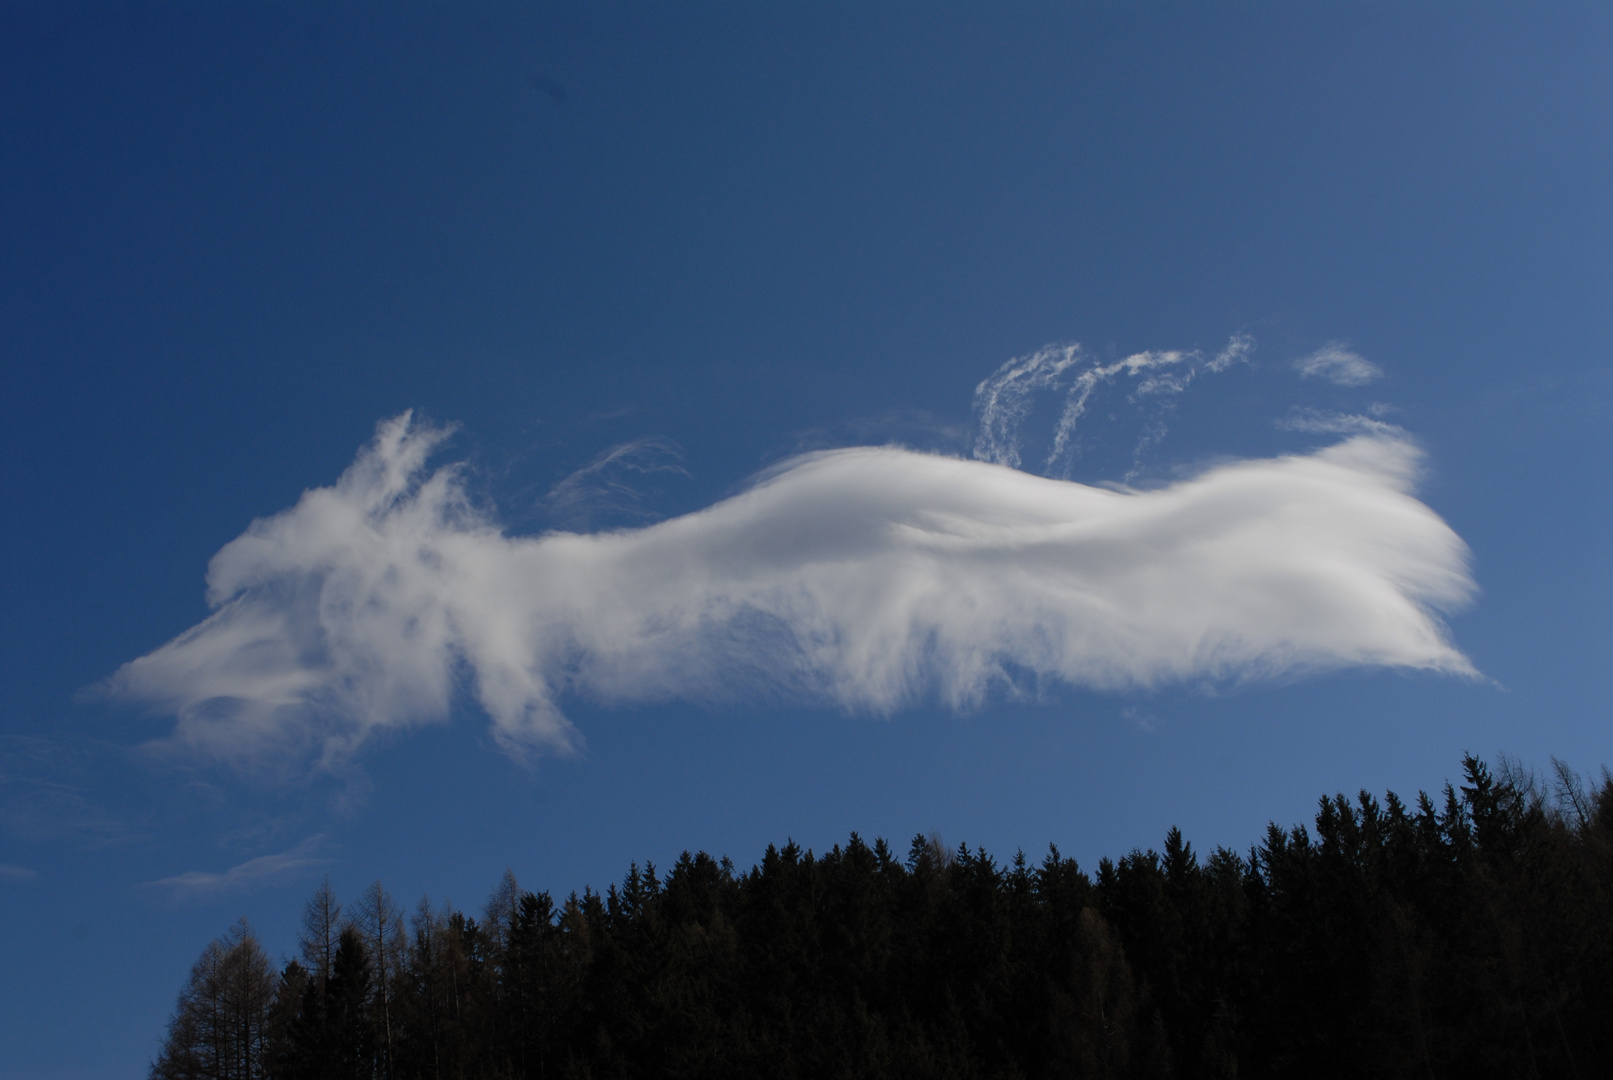 Wolkenkunst